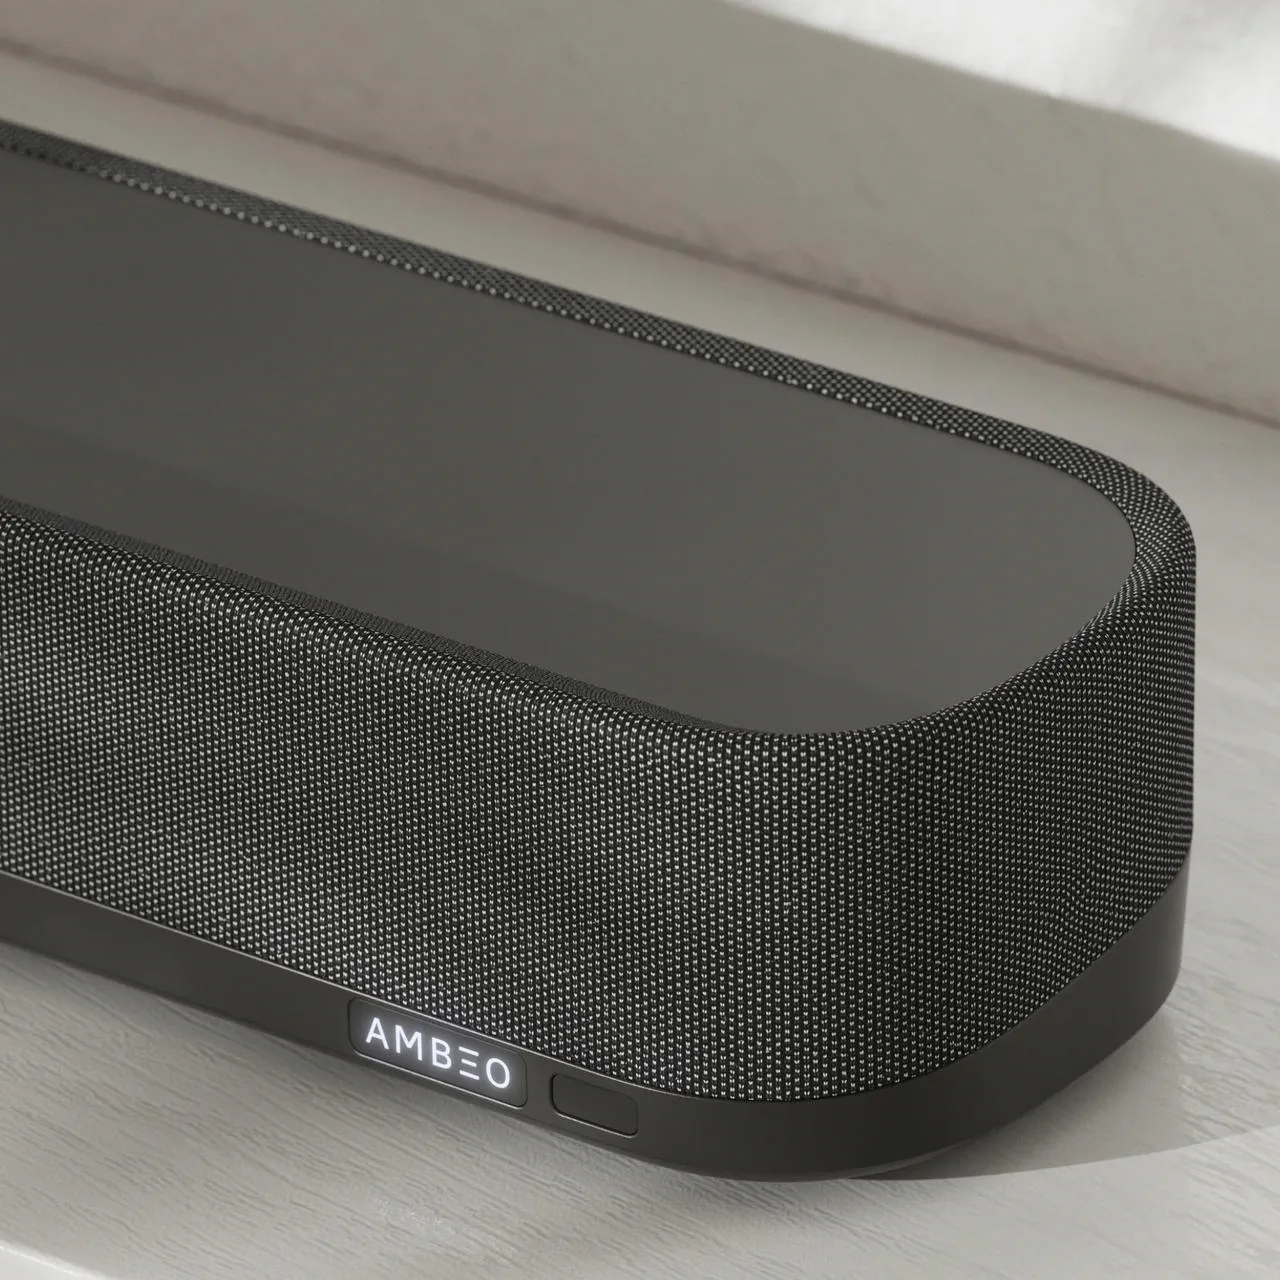 Sennheiser ra mắt loa thanh AMBEO Soundbar Mini: Giải pháp âm thanh hoàn hảo cho mọi không gian